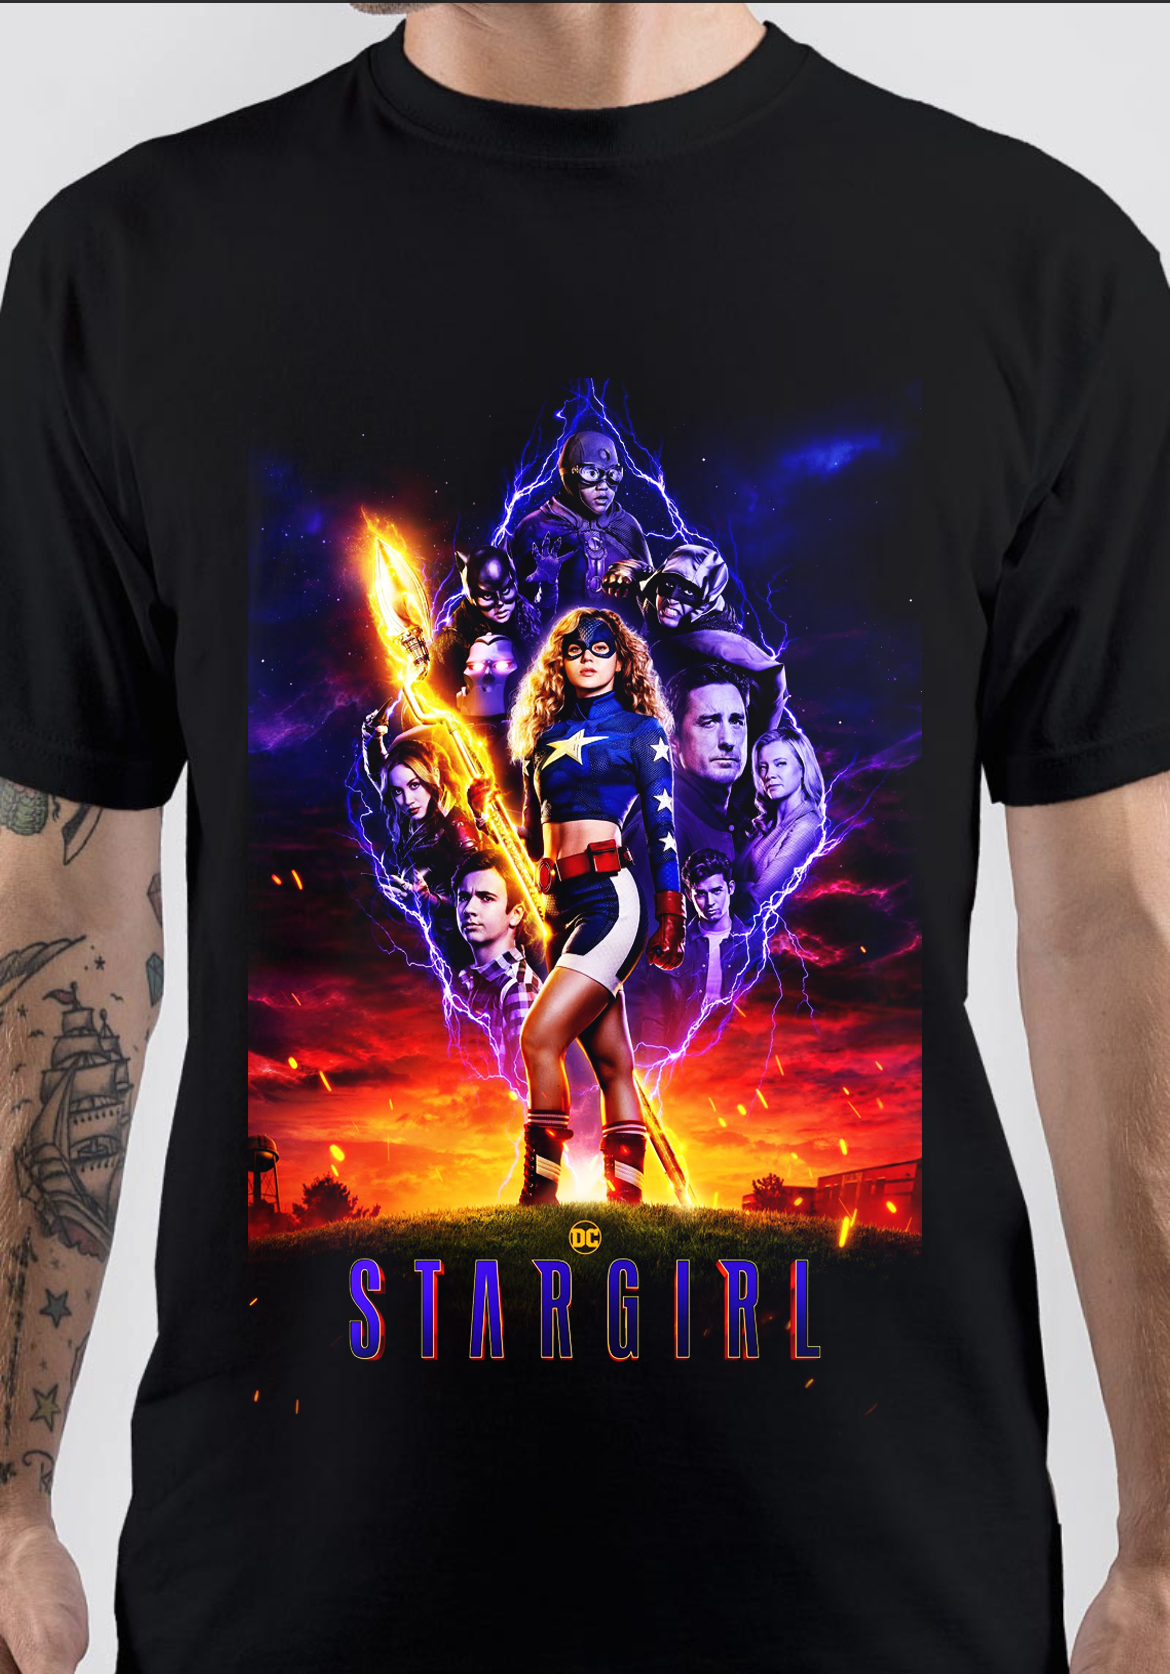 Stargirl T-Shirt And Merchandise